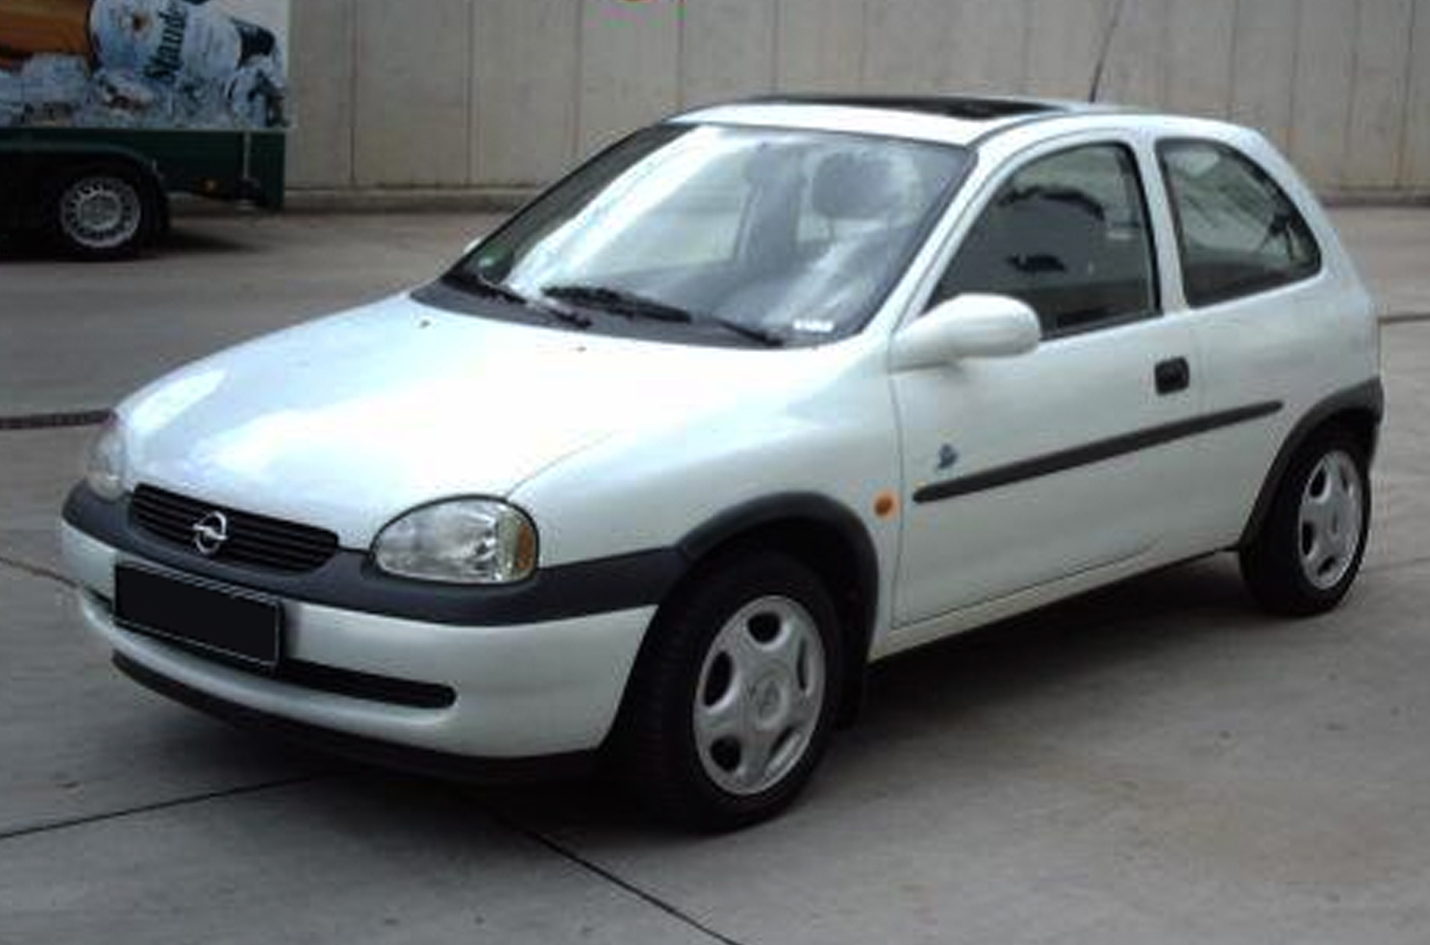 Opel Tigra TwinTop - Wikipedia